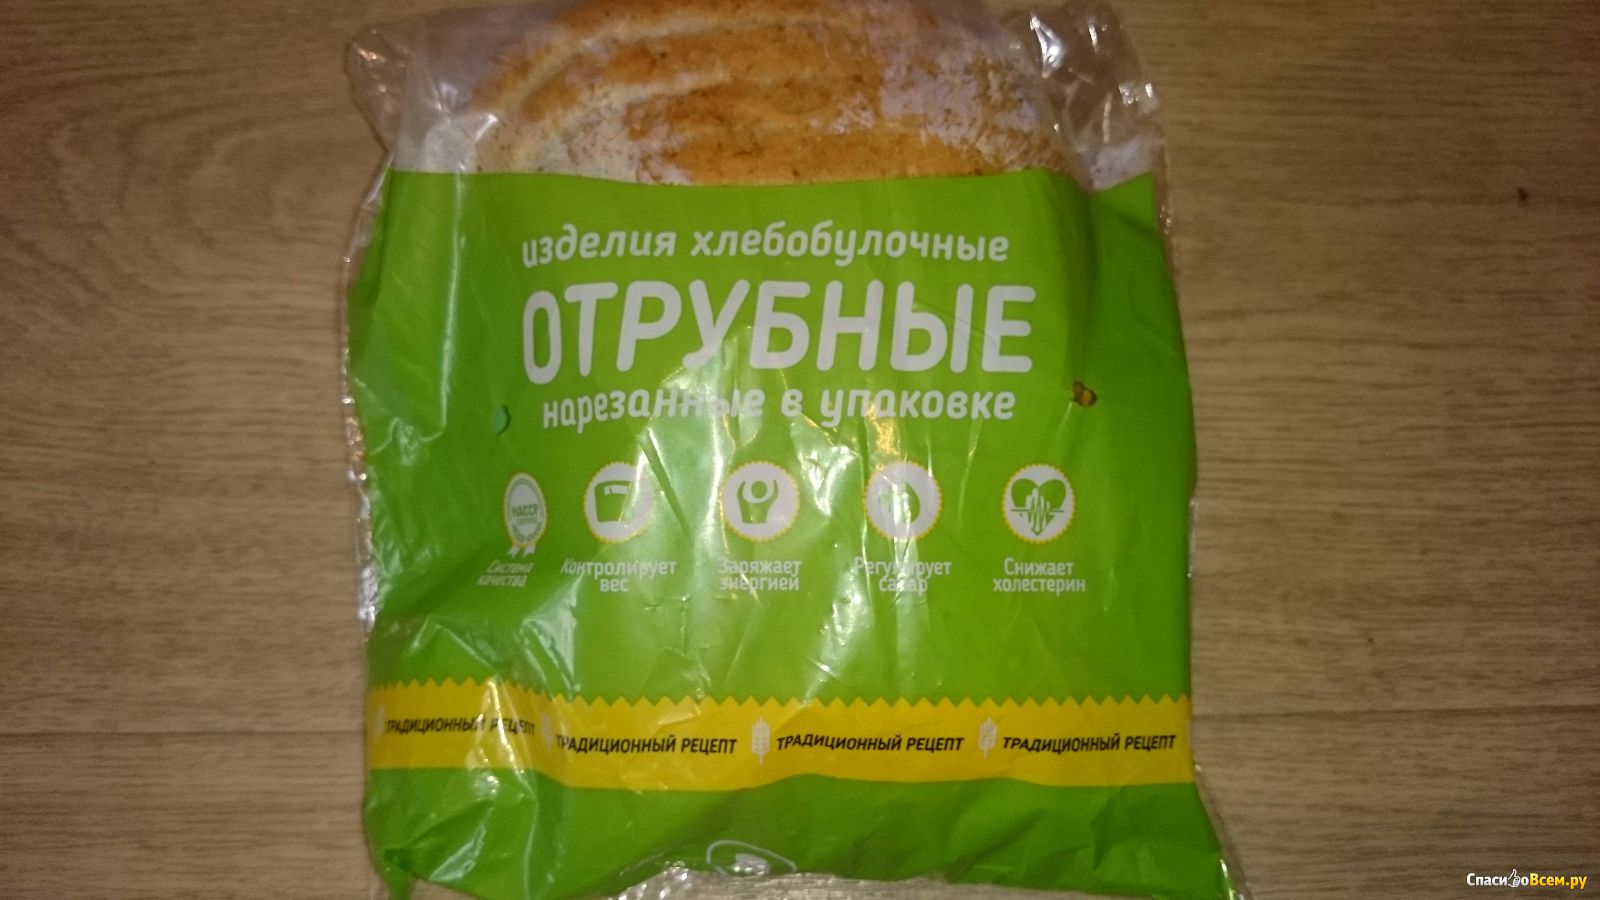 Отруби магнит. Хлеб Арзамасский отрубной. Хлеб отрубной в зеленой упаковке. Батон отрубной Арзамасский хлеб. Арзамасский хлеб с отрубями.